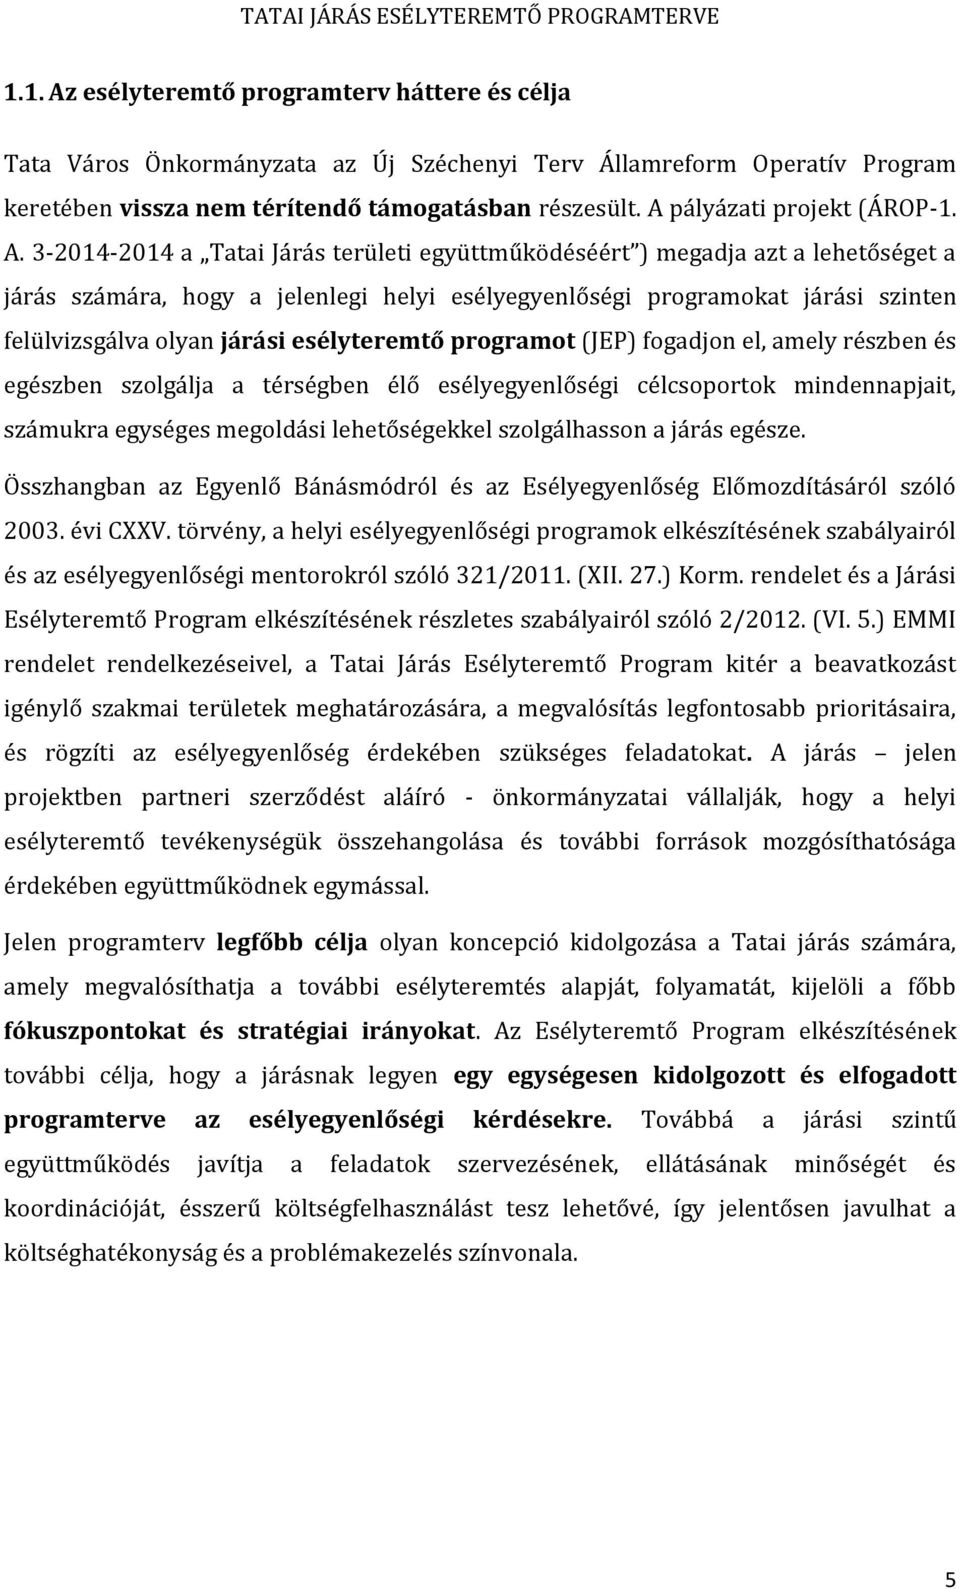 3-2014-2014 a Tatai Járás területi együttműködéséért ) megadja azt a lehetőséget a járás számára, hogy a jelenlegi helyi esélyegyenlőségi programokat járási szinten felülvizsgálva olyan járási